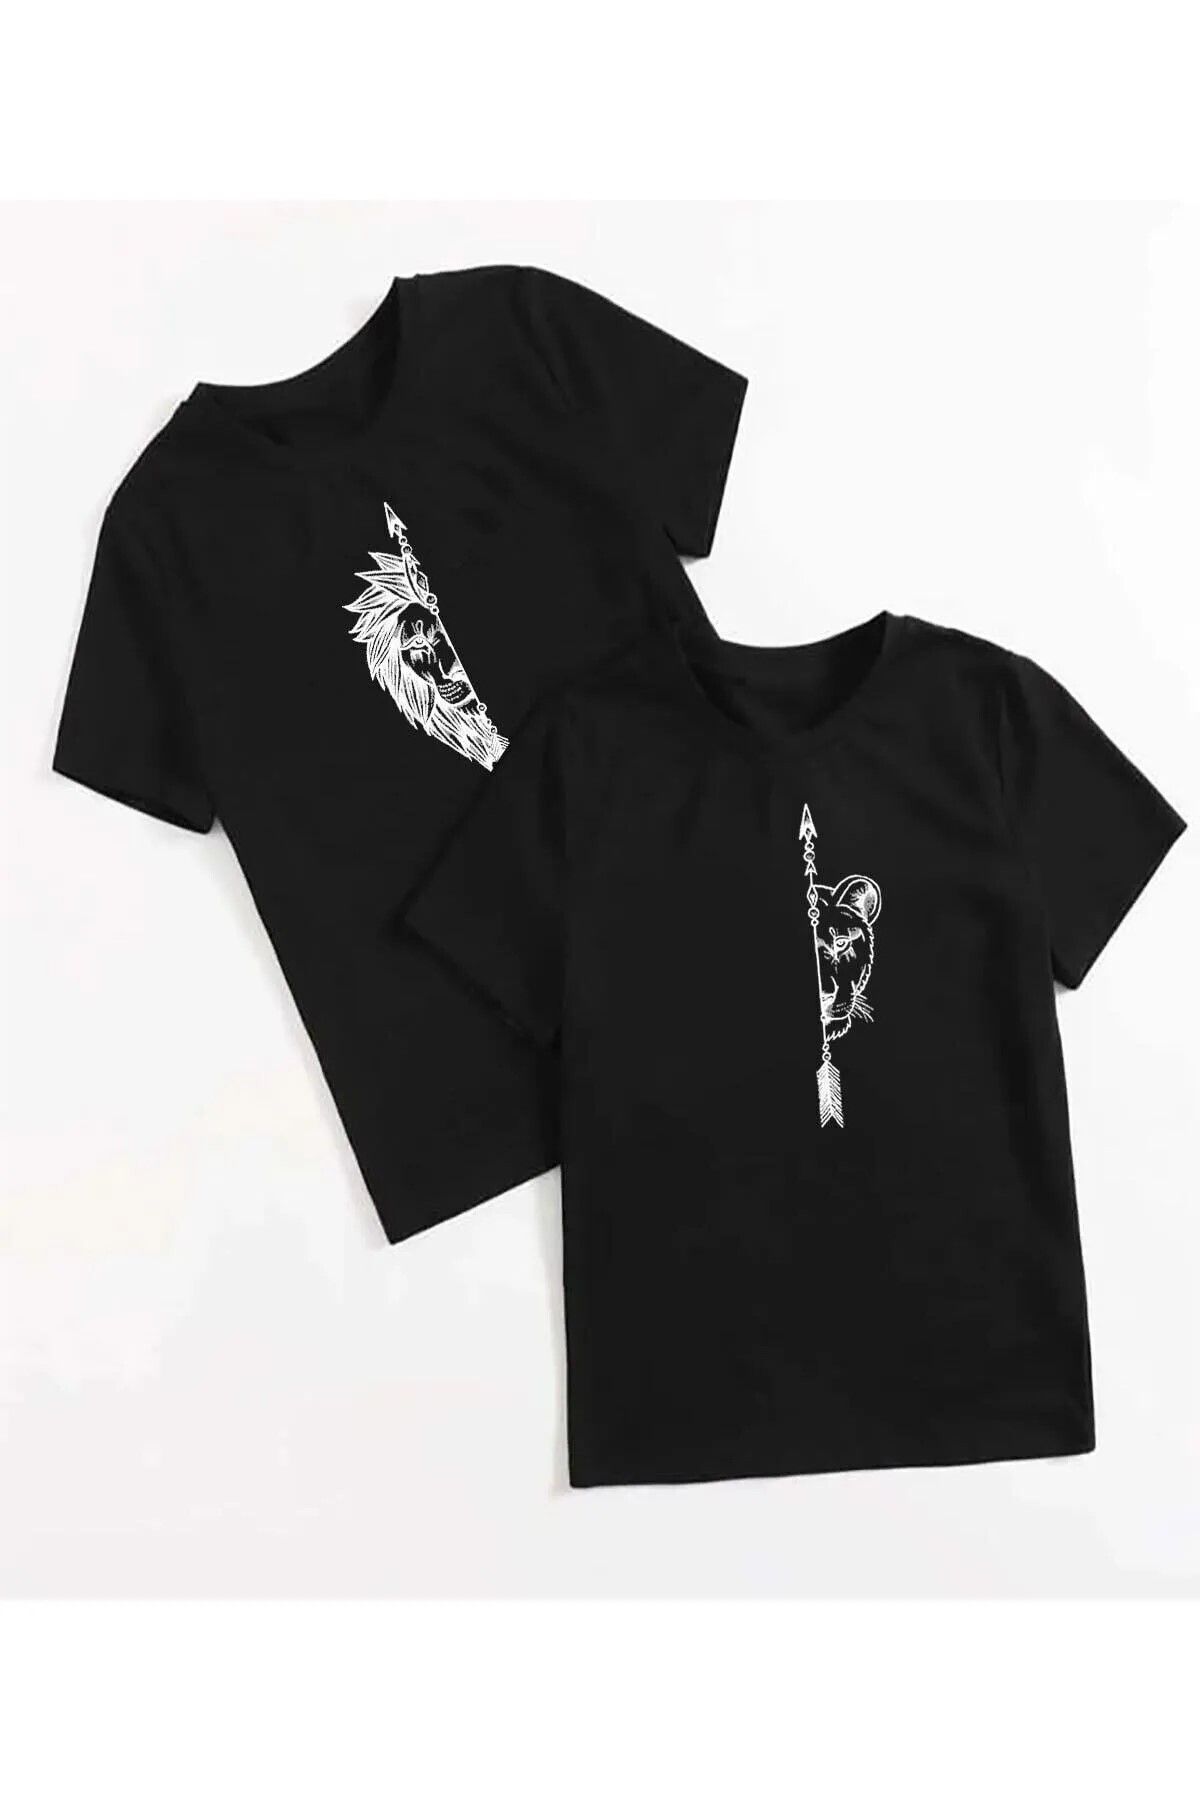 Unique Kadın Erkek Dişi ve Erkek Aslan Çiftler Sevgili Çift Kombini Tasarım Oversize T-shirt 2'li Takım